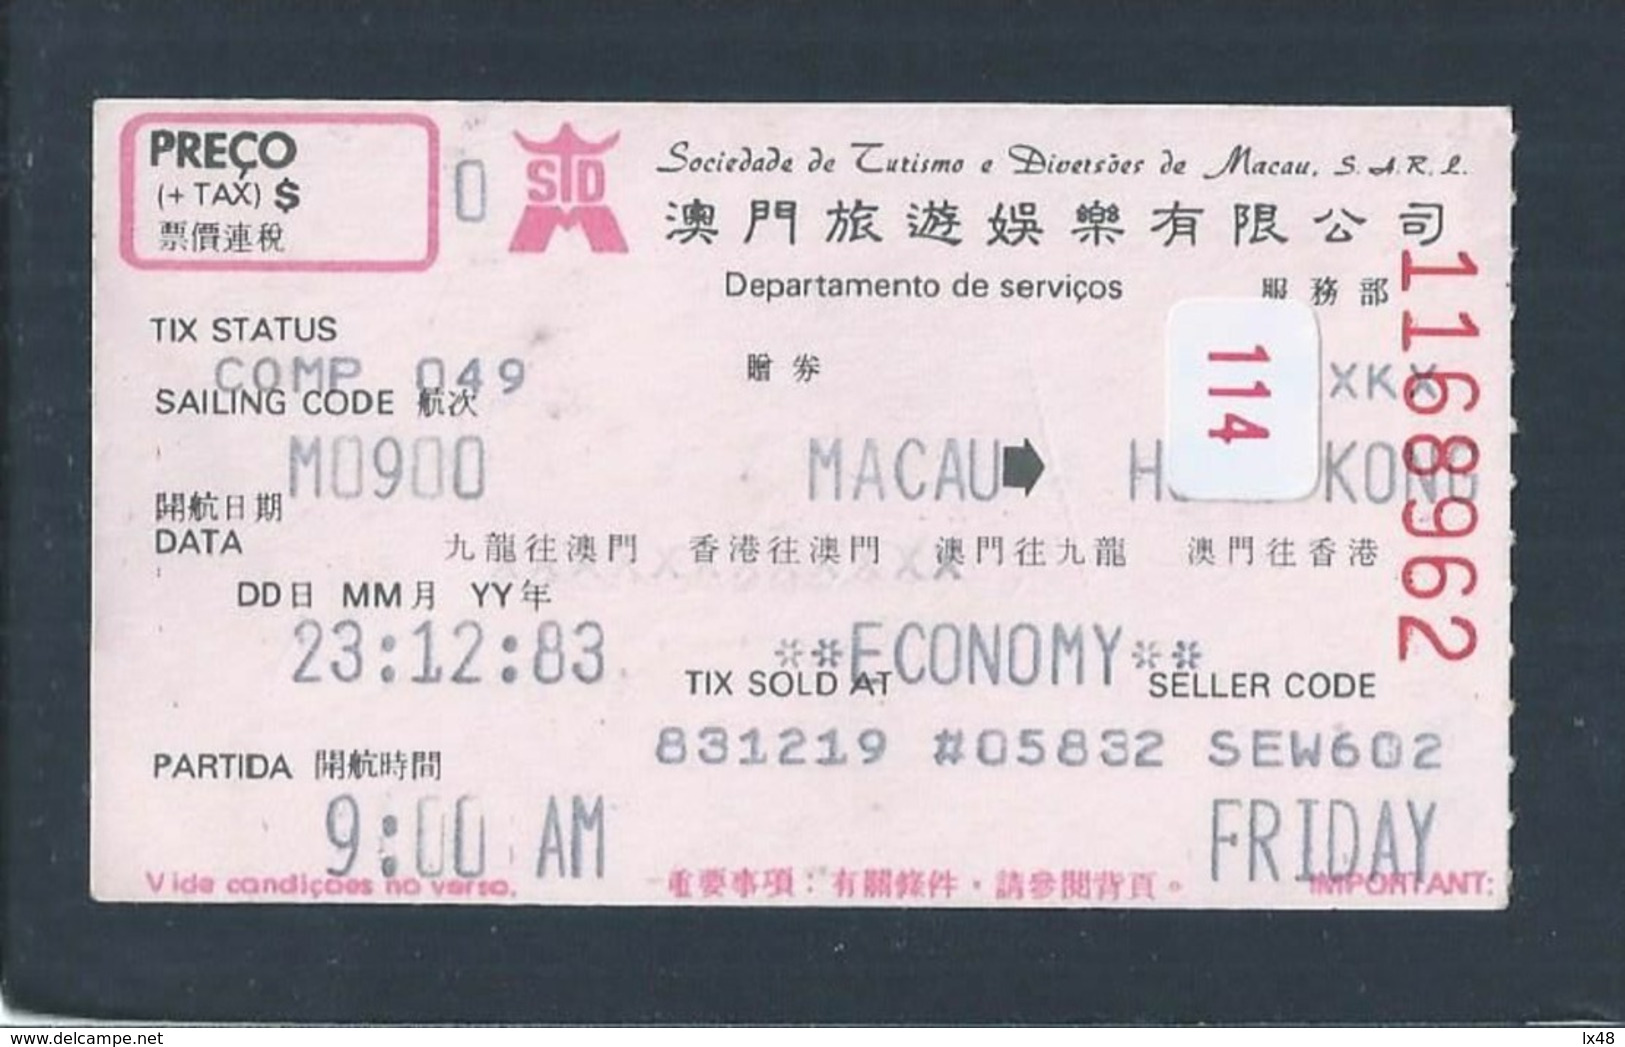 Macao Transport Ticket - Hong Kong. Macau Amusement Company. Macao Fahrschein - Hong Kong. Billets De Transport. Macau - World